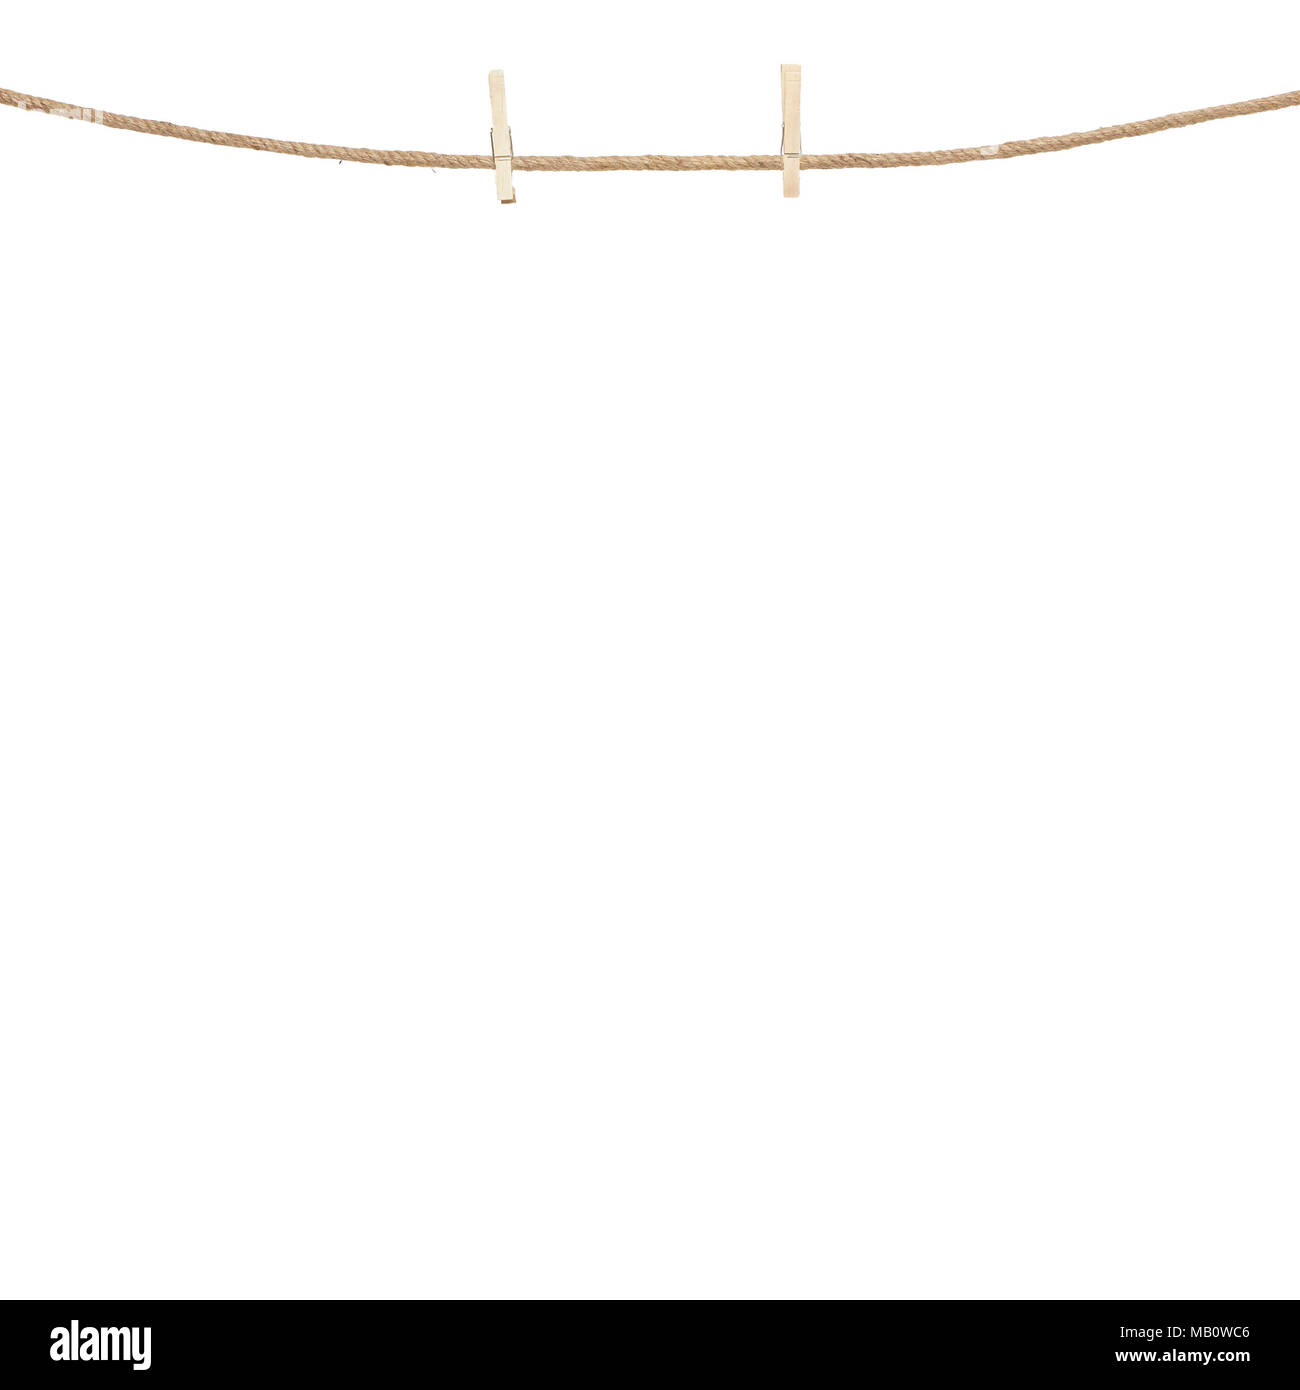 Holz Wäscheklammern hängend am Seil auf einem schlichten weißen Hintergrund Stockfoto